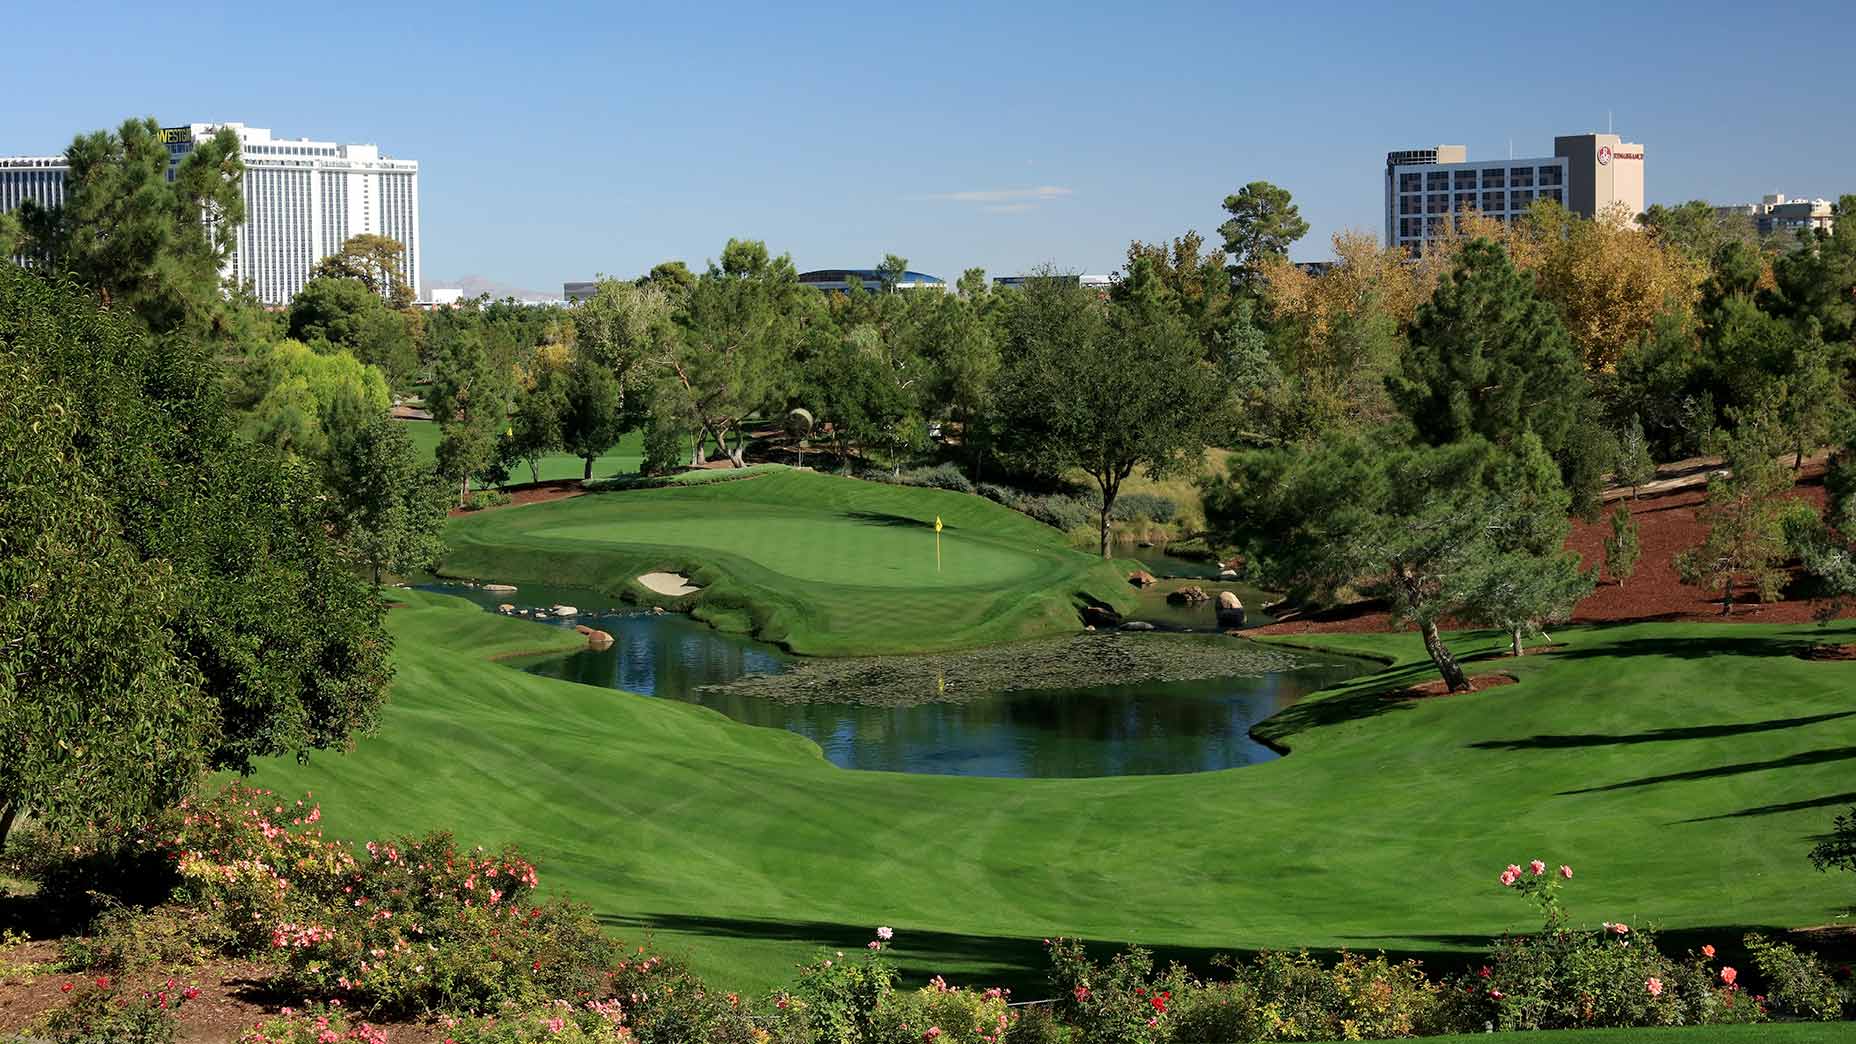 A view of the Wynn Golf Club in Las Vegas.